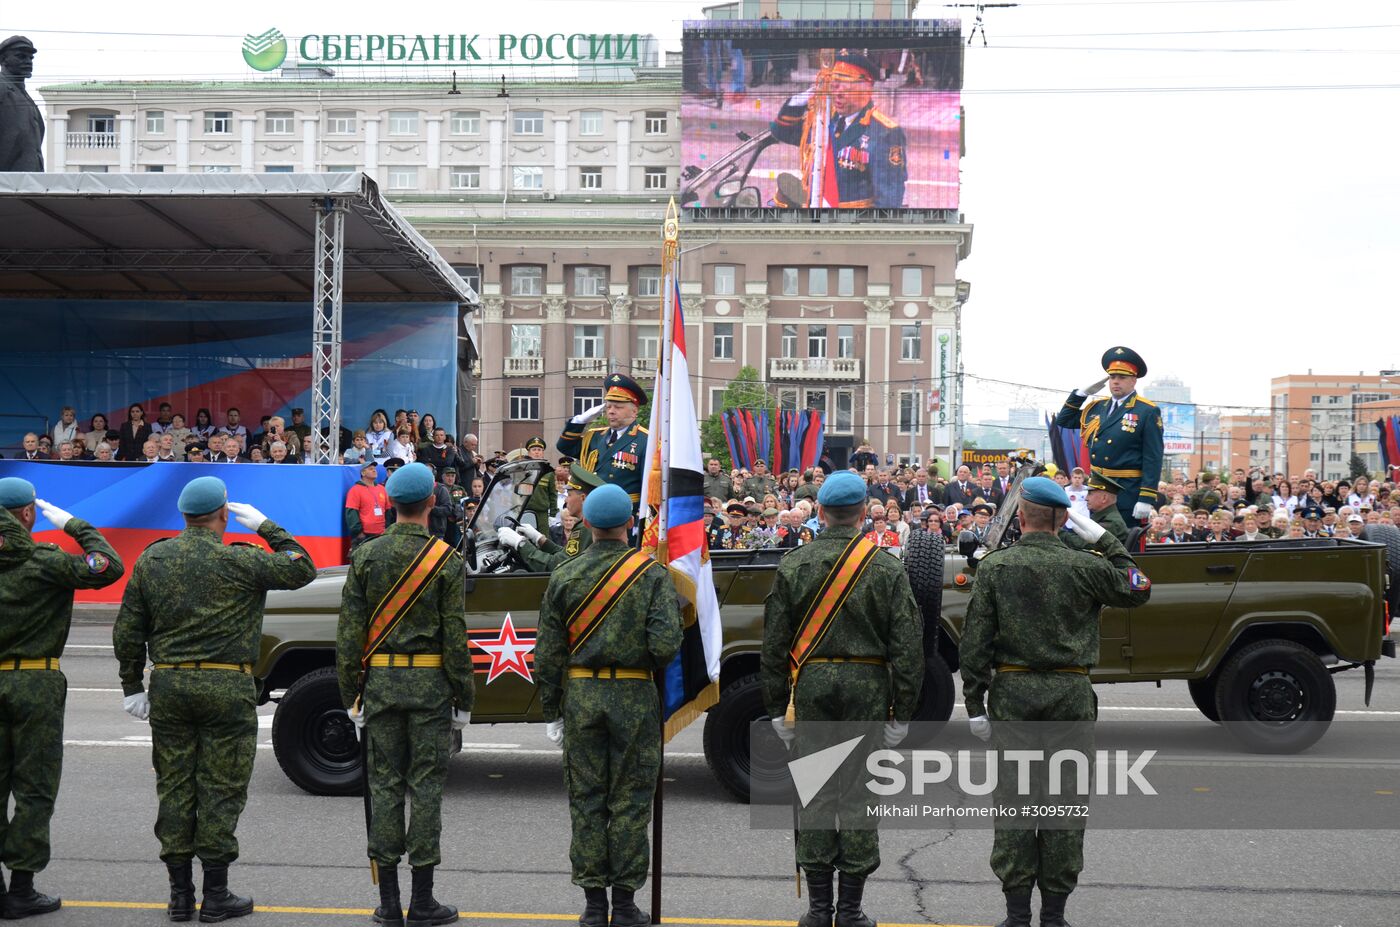 Victory Day celebration in Donetsk